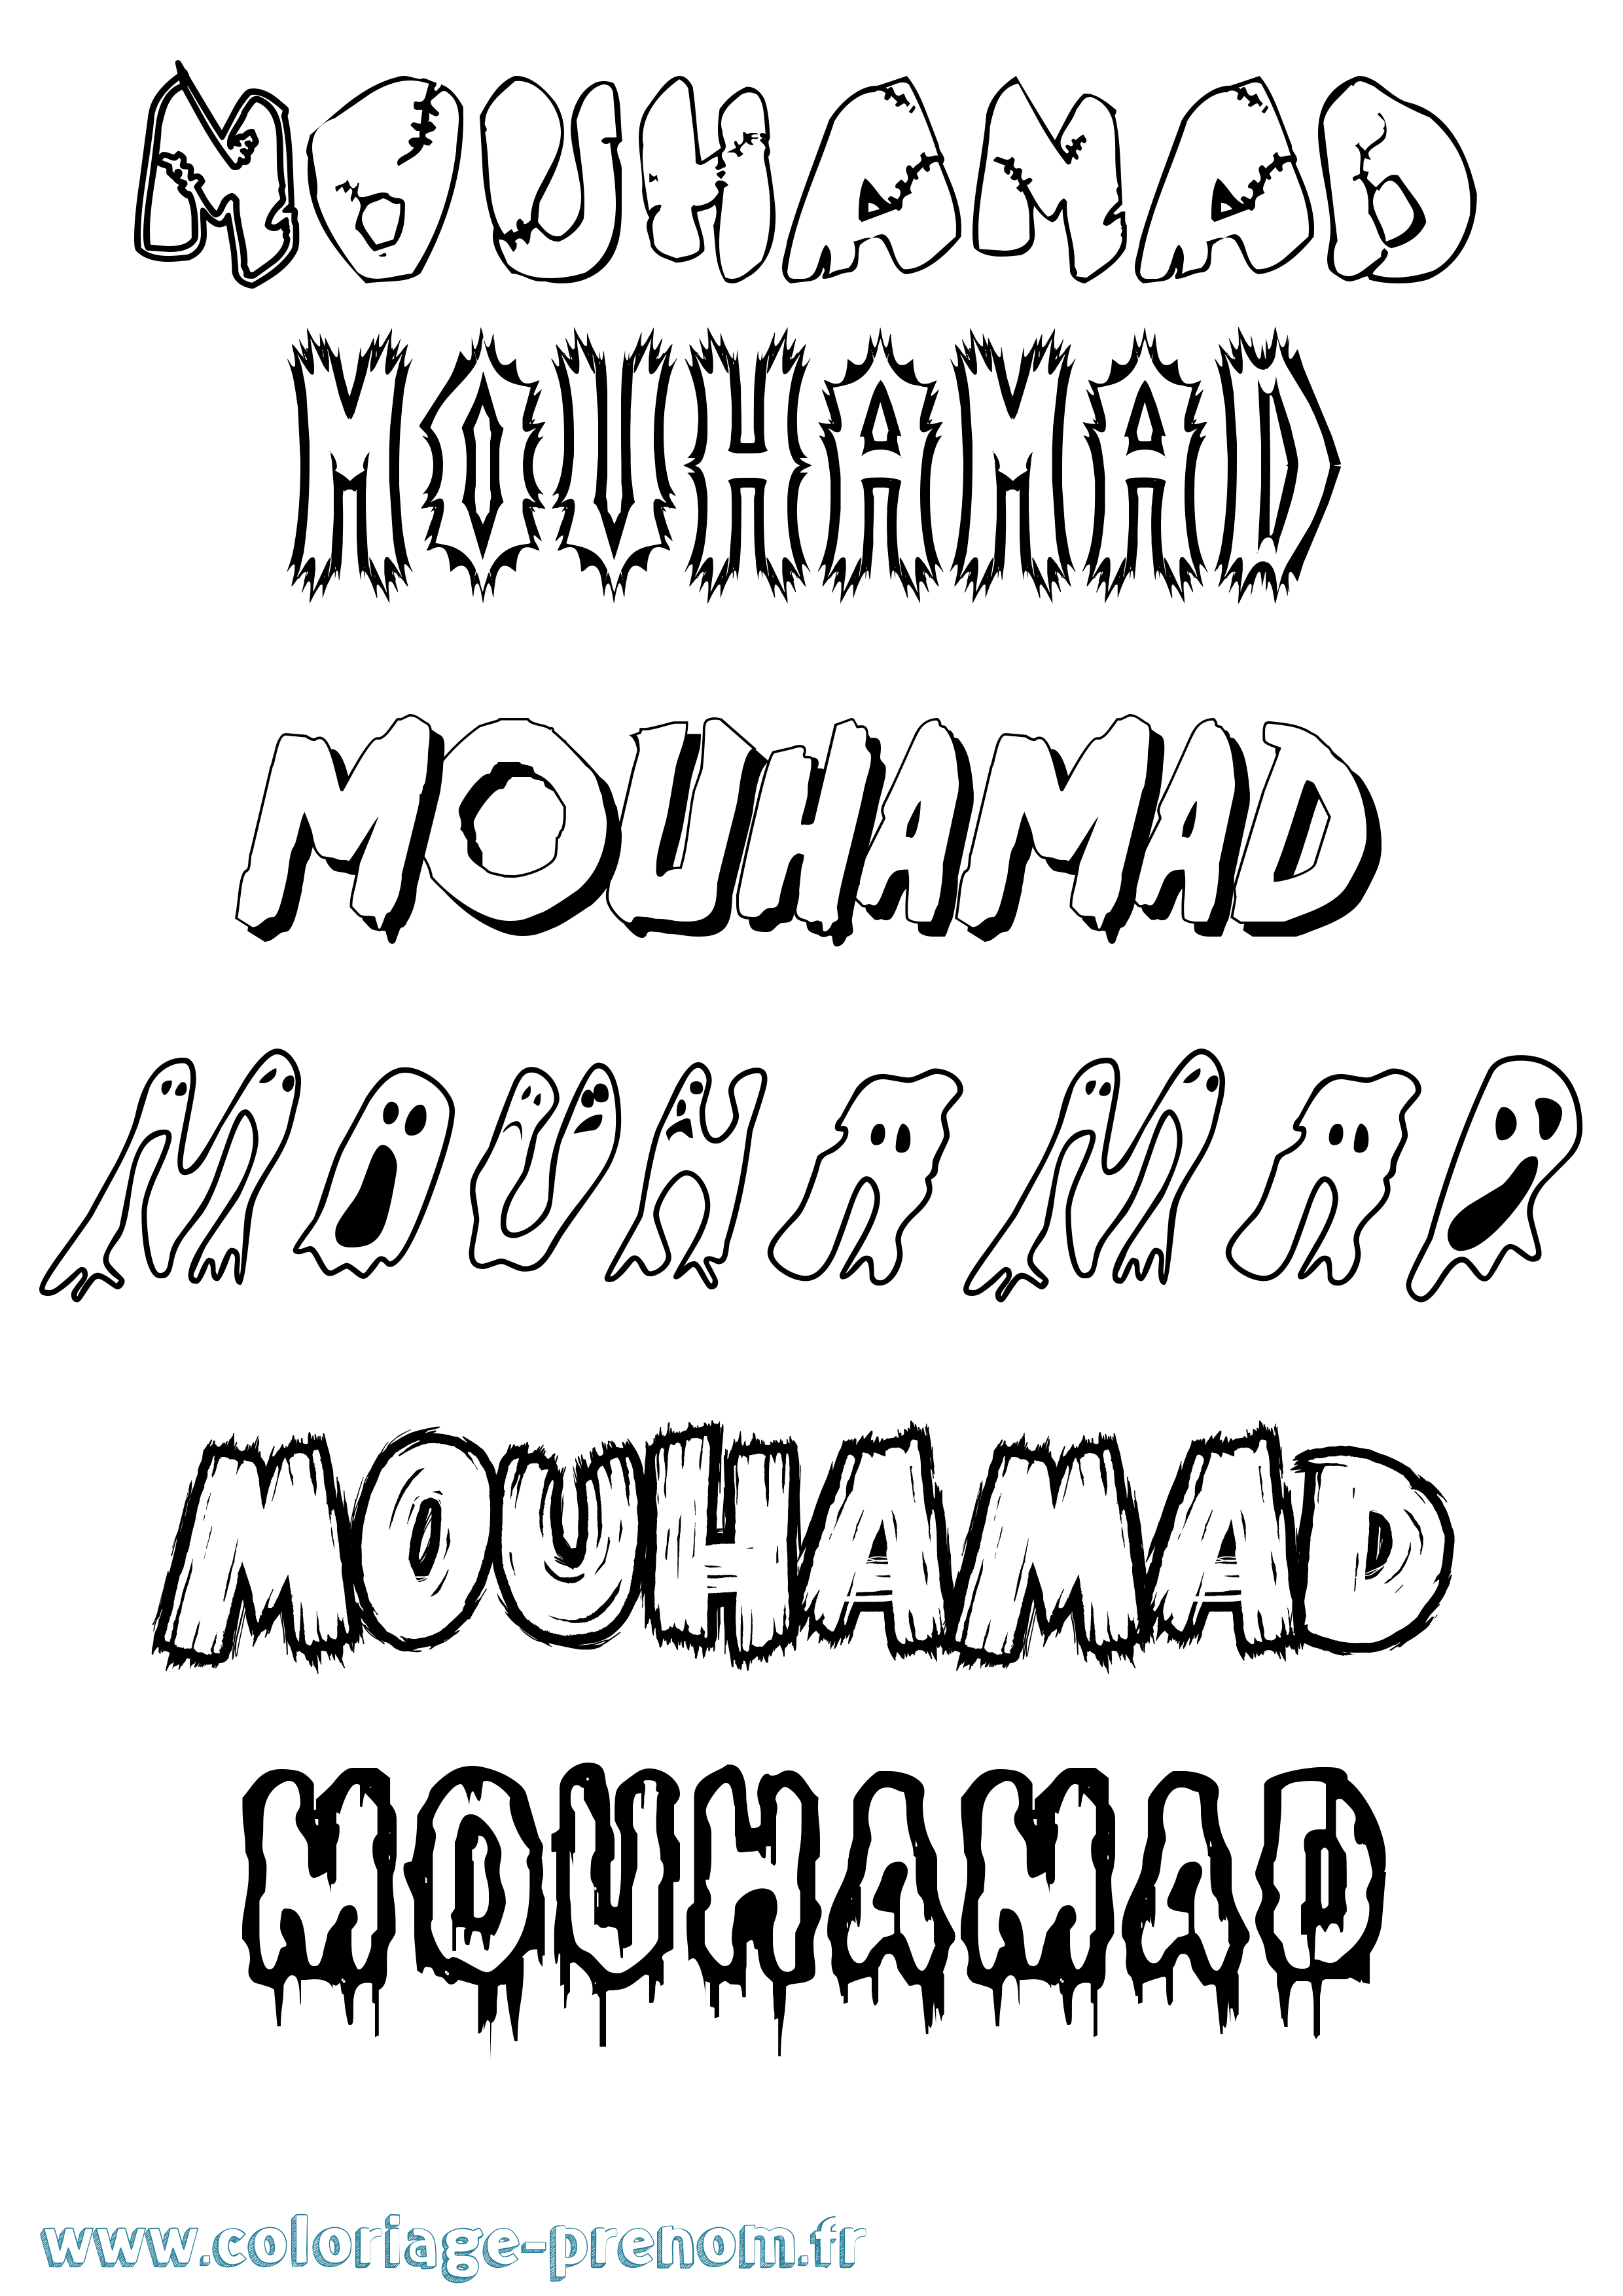 Coloriage prénom Mouhamad Frisson